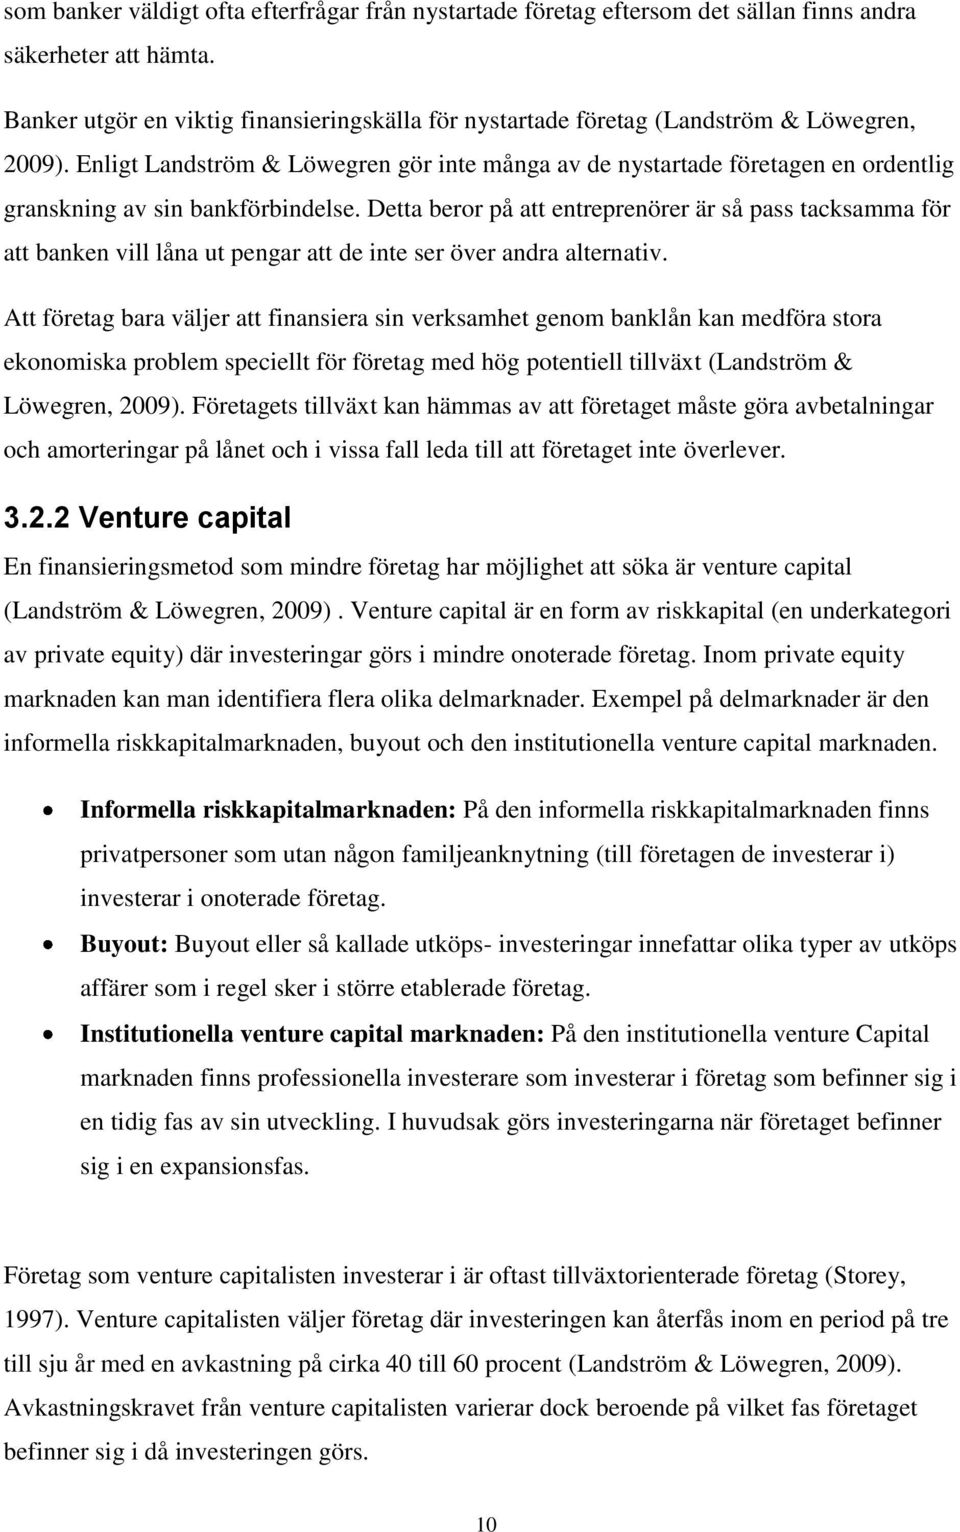 Enligt Landström & Löwegren gör inte många av de nystartade företagen en ordentlig granskning av sin bankförbindelse.